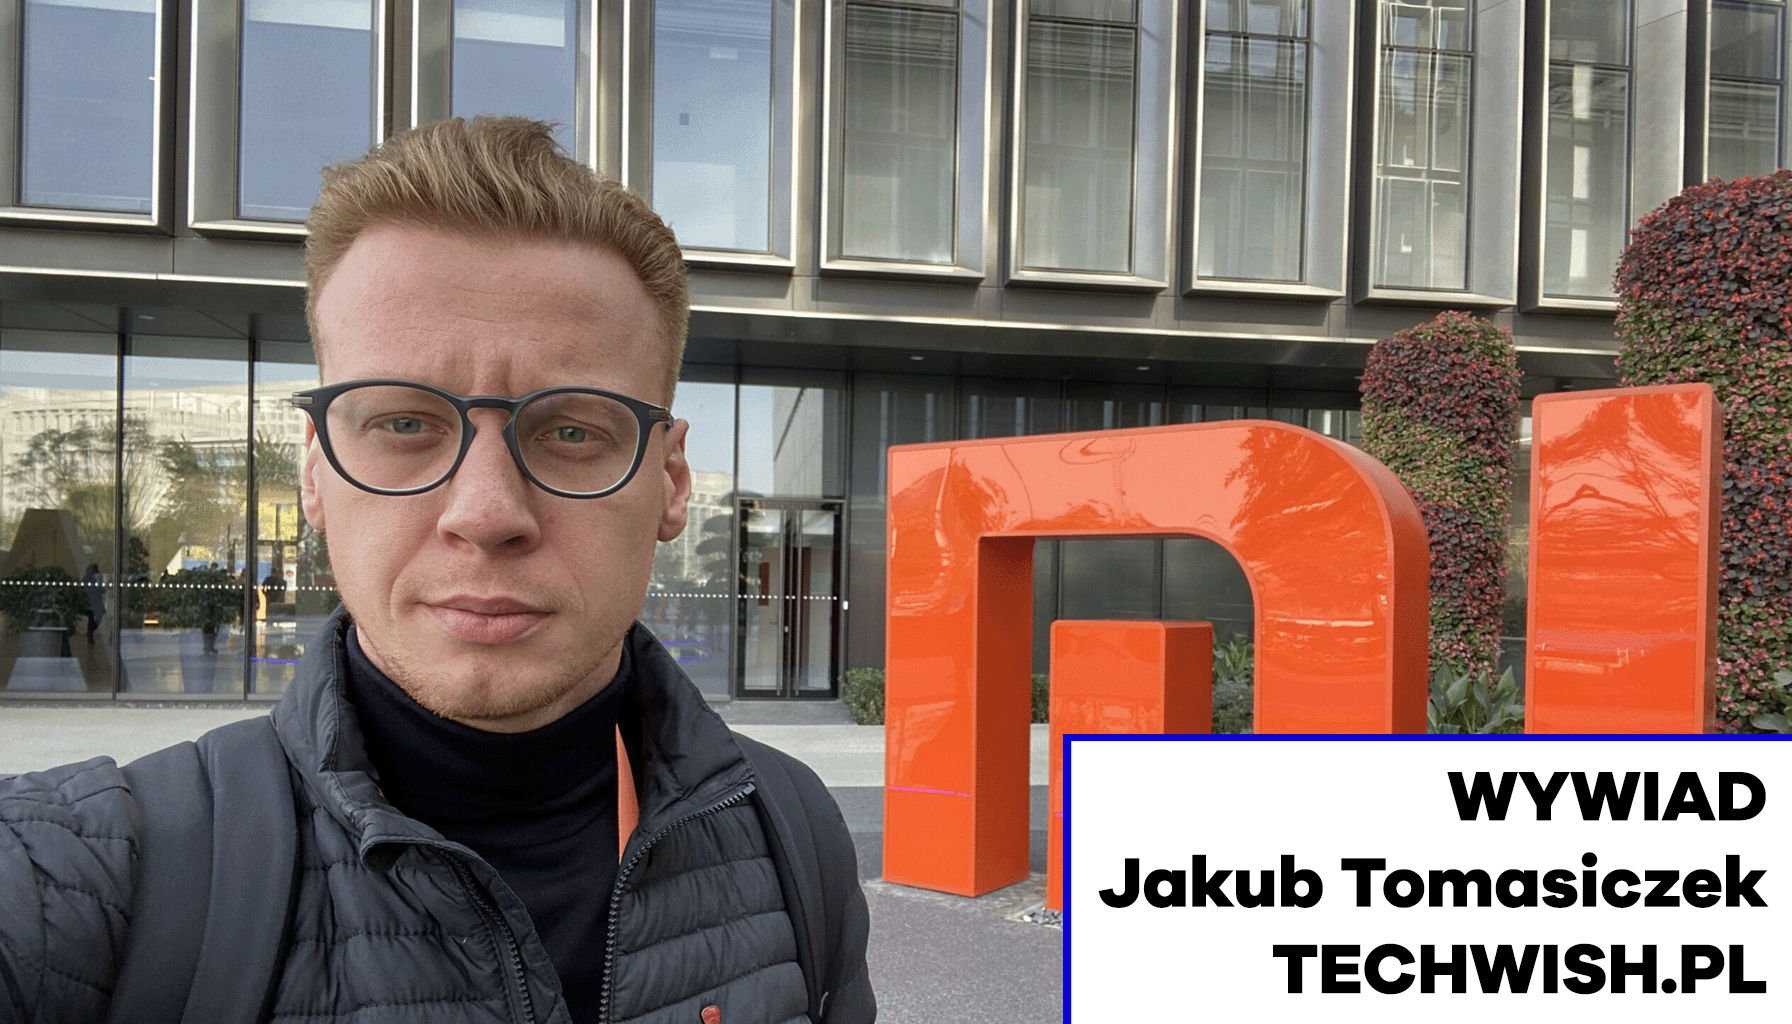 Wywiad z Jakubem Tomasiczkiem – założycielem Techwish.pl elektronika MEDIARUN.COM JAKUB TOMASICZEK TECHWISH WYWIAD V2